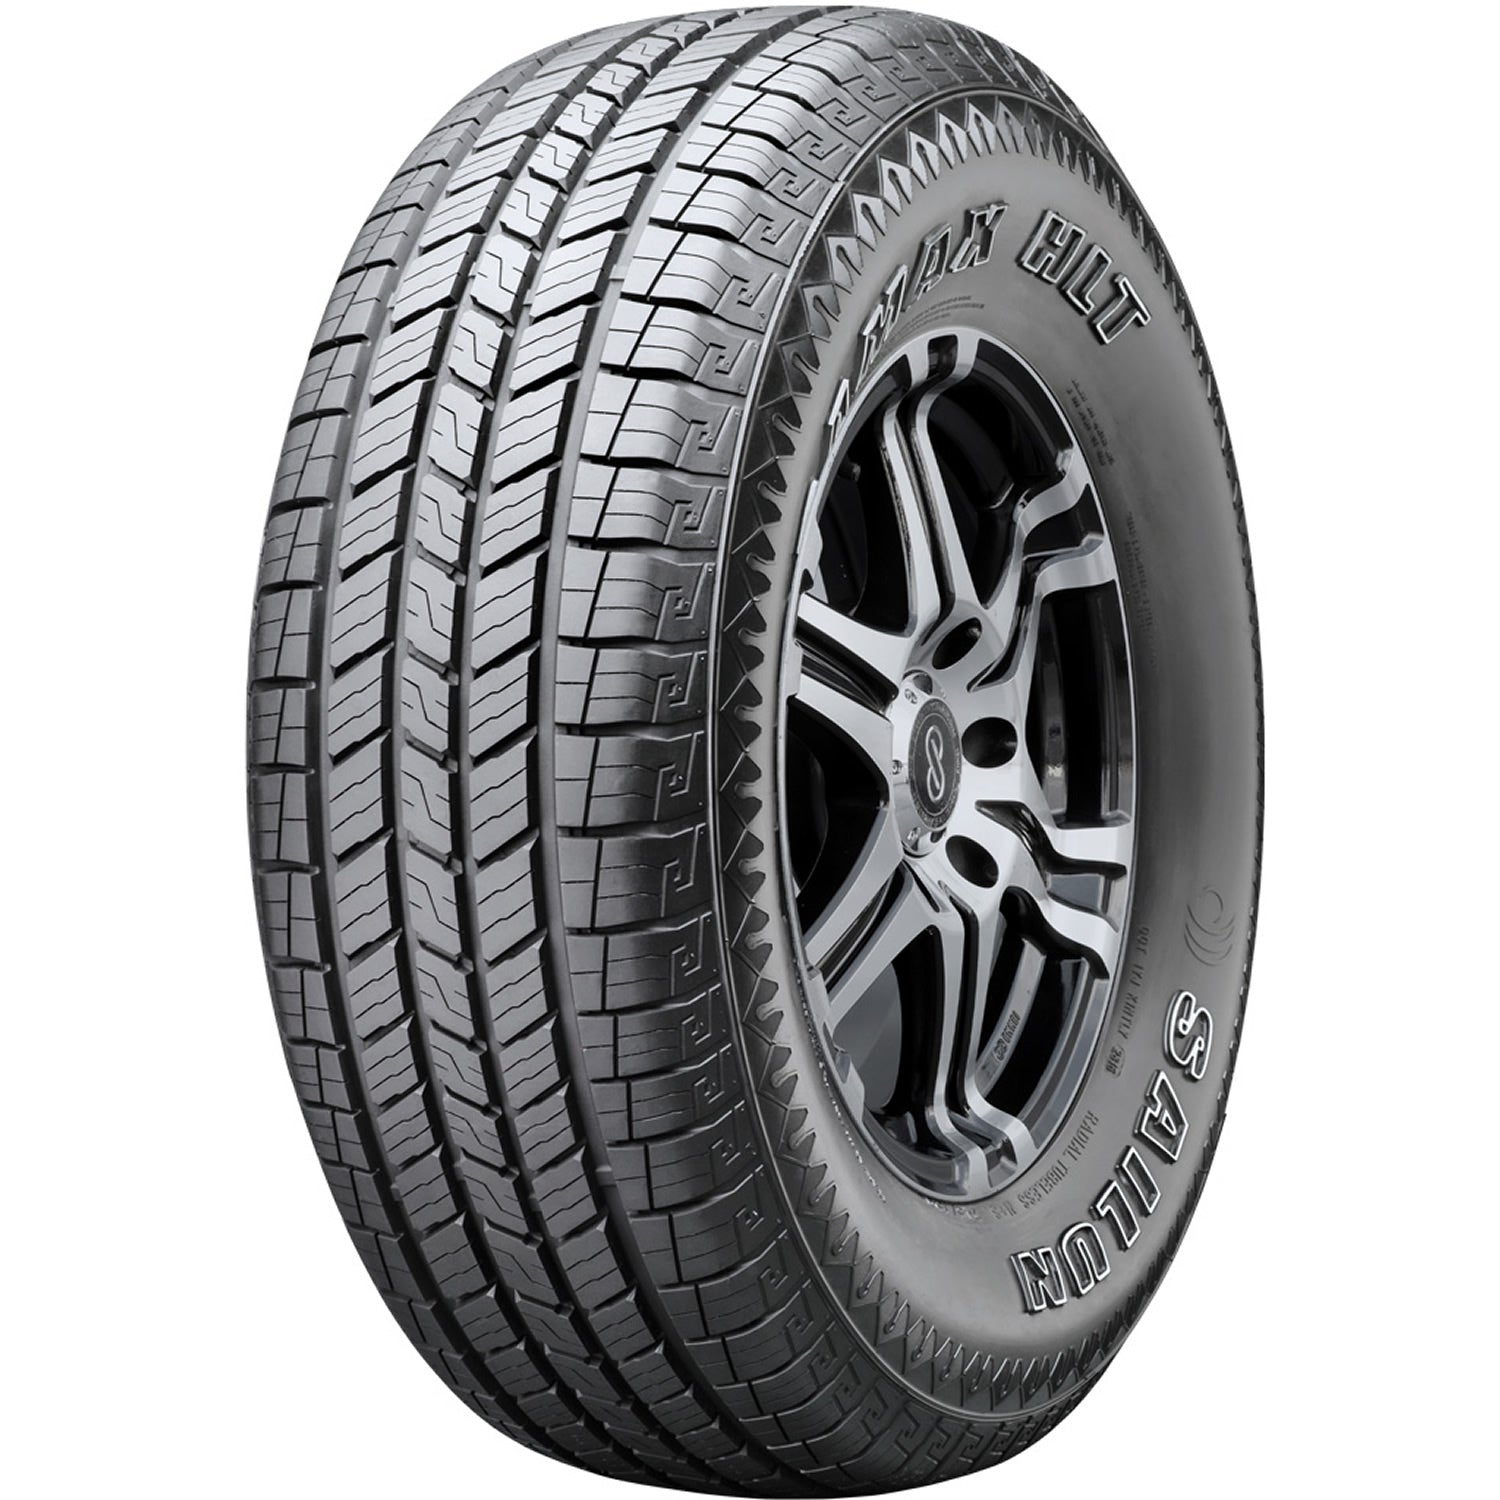 SAILUN TERRAMAX HLT LT275/65R20 (34.1X11R 20) Tires